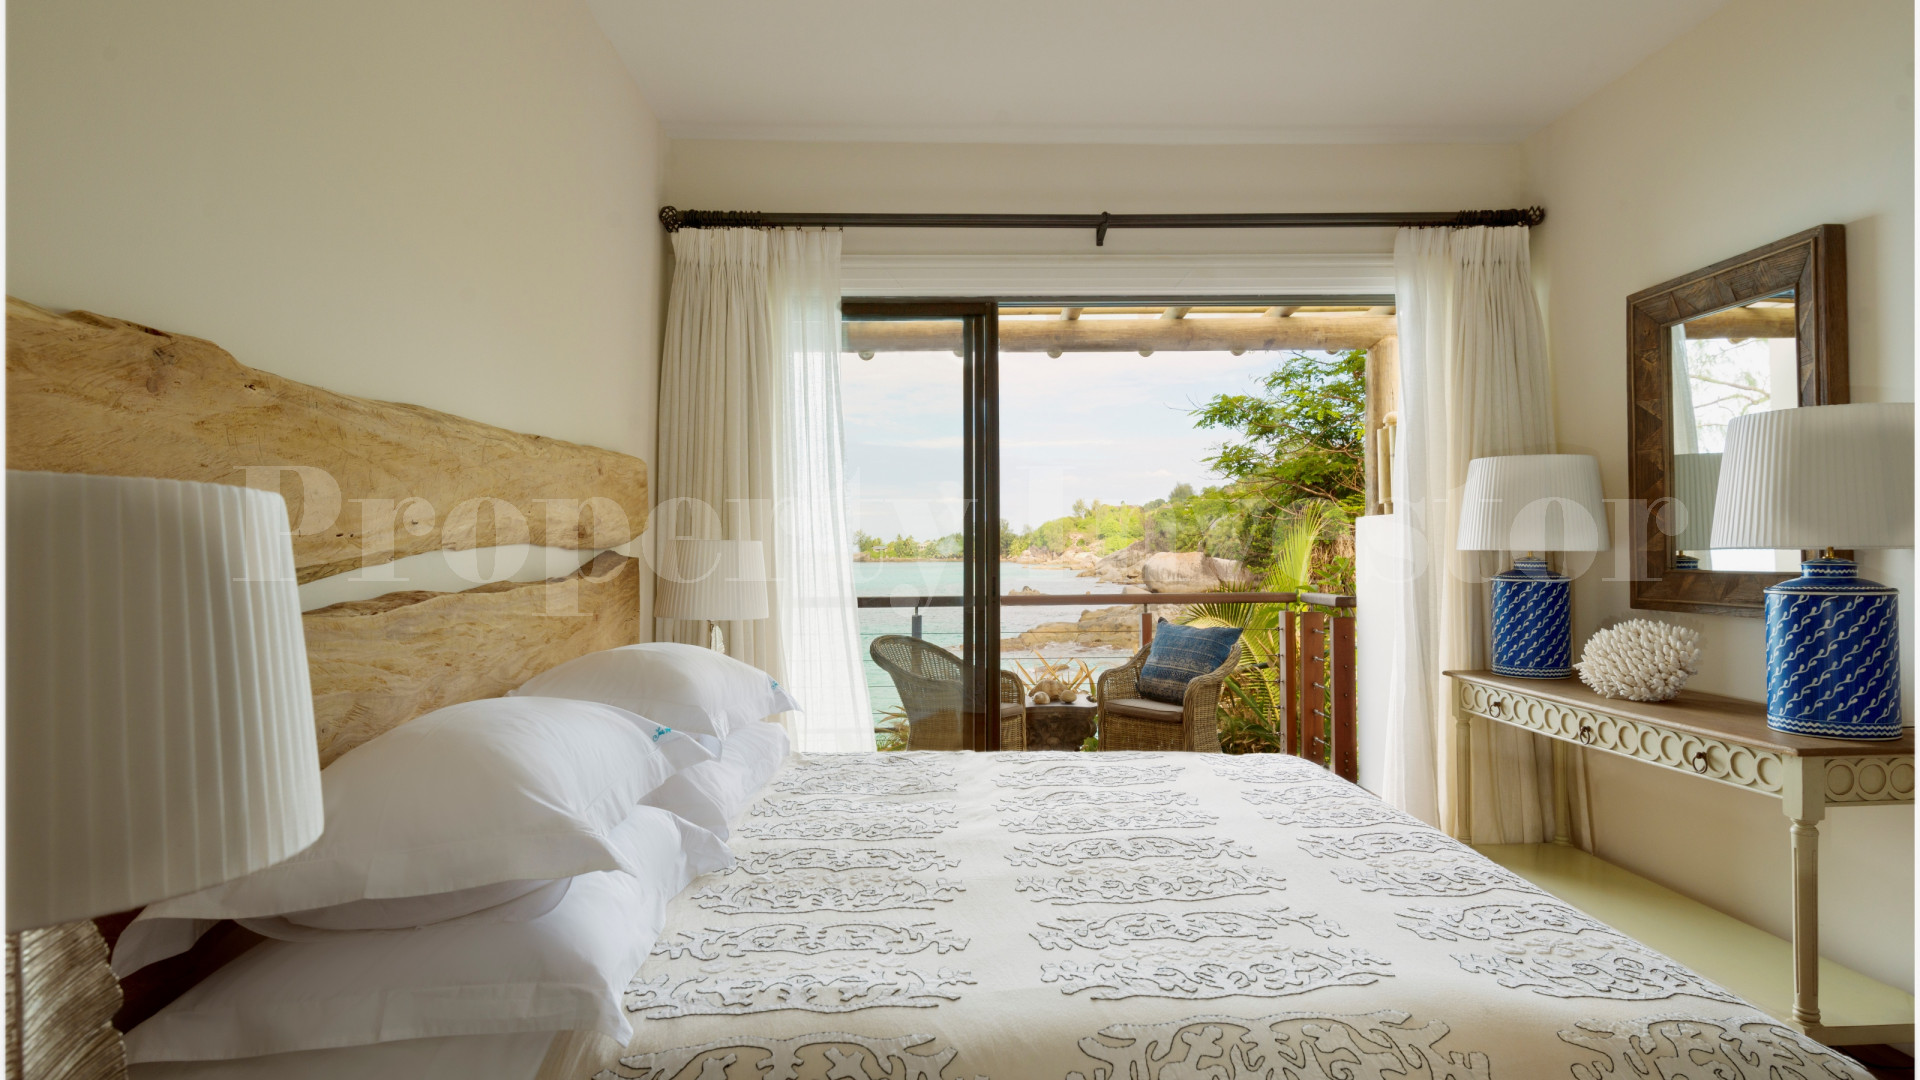 Изумительная роскошная вилла с 3 спальнями на берегу моря в эксклюзивном месте на севере о.Маэ, Сейшелы